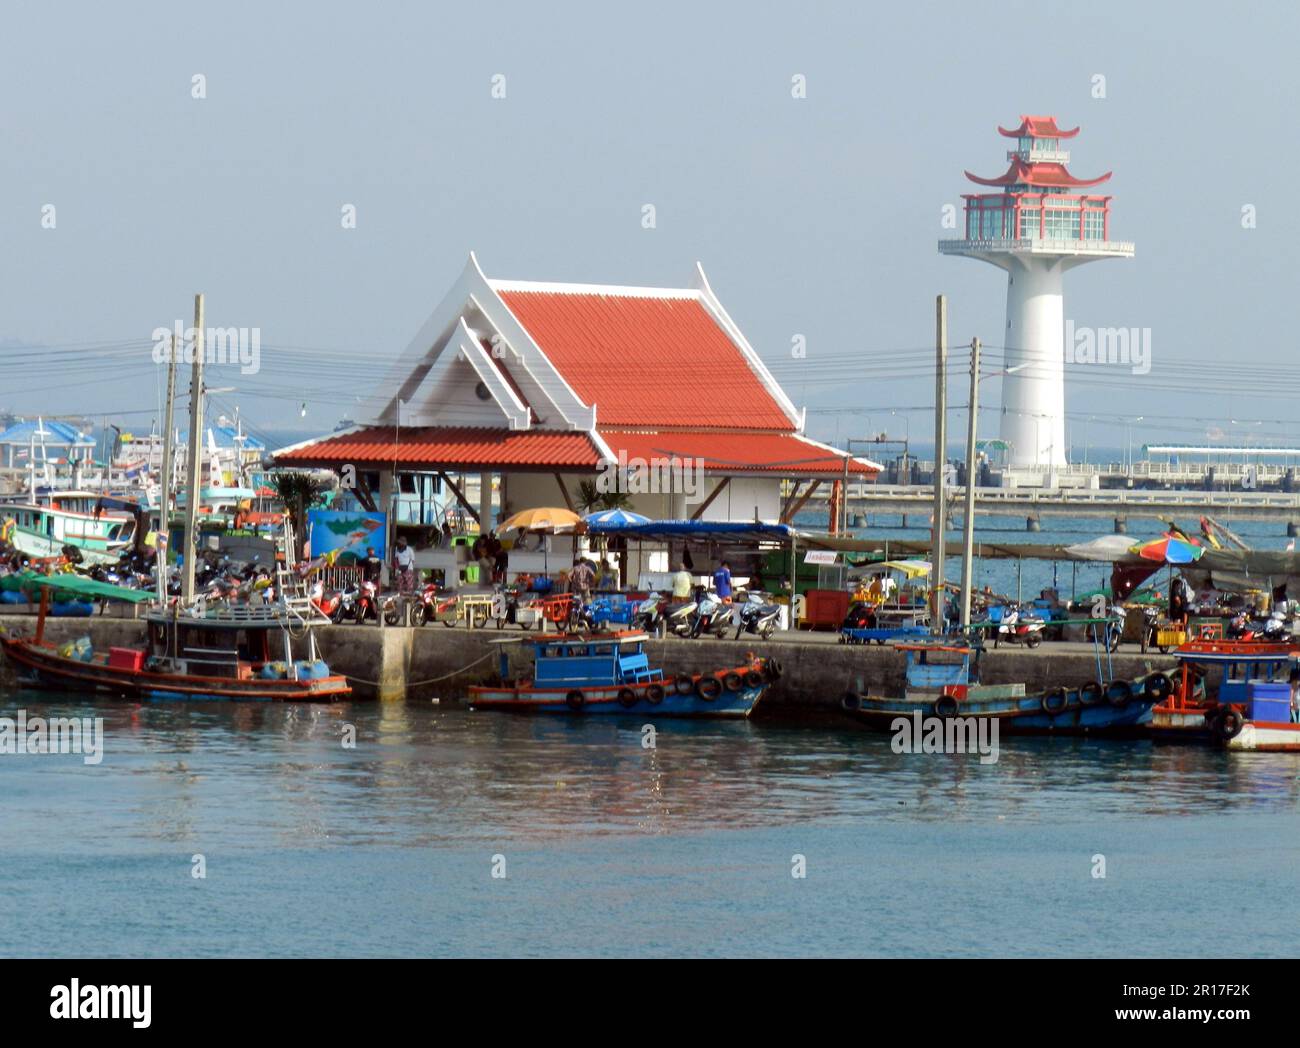 Thailandia, Chonburi, Ko si Chang Island: Vivace molo di Tha Lang con barche da pesca e noleggio scooter, e la torre di osservazione sullo sfondo. Foto Stock